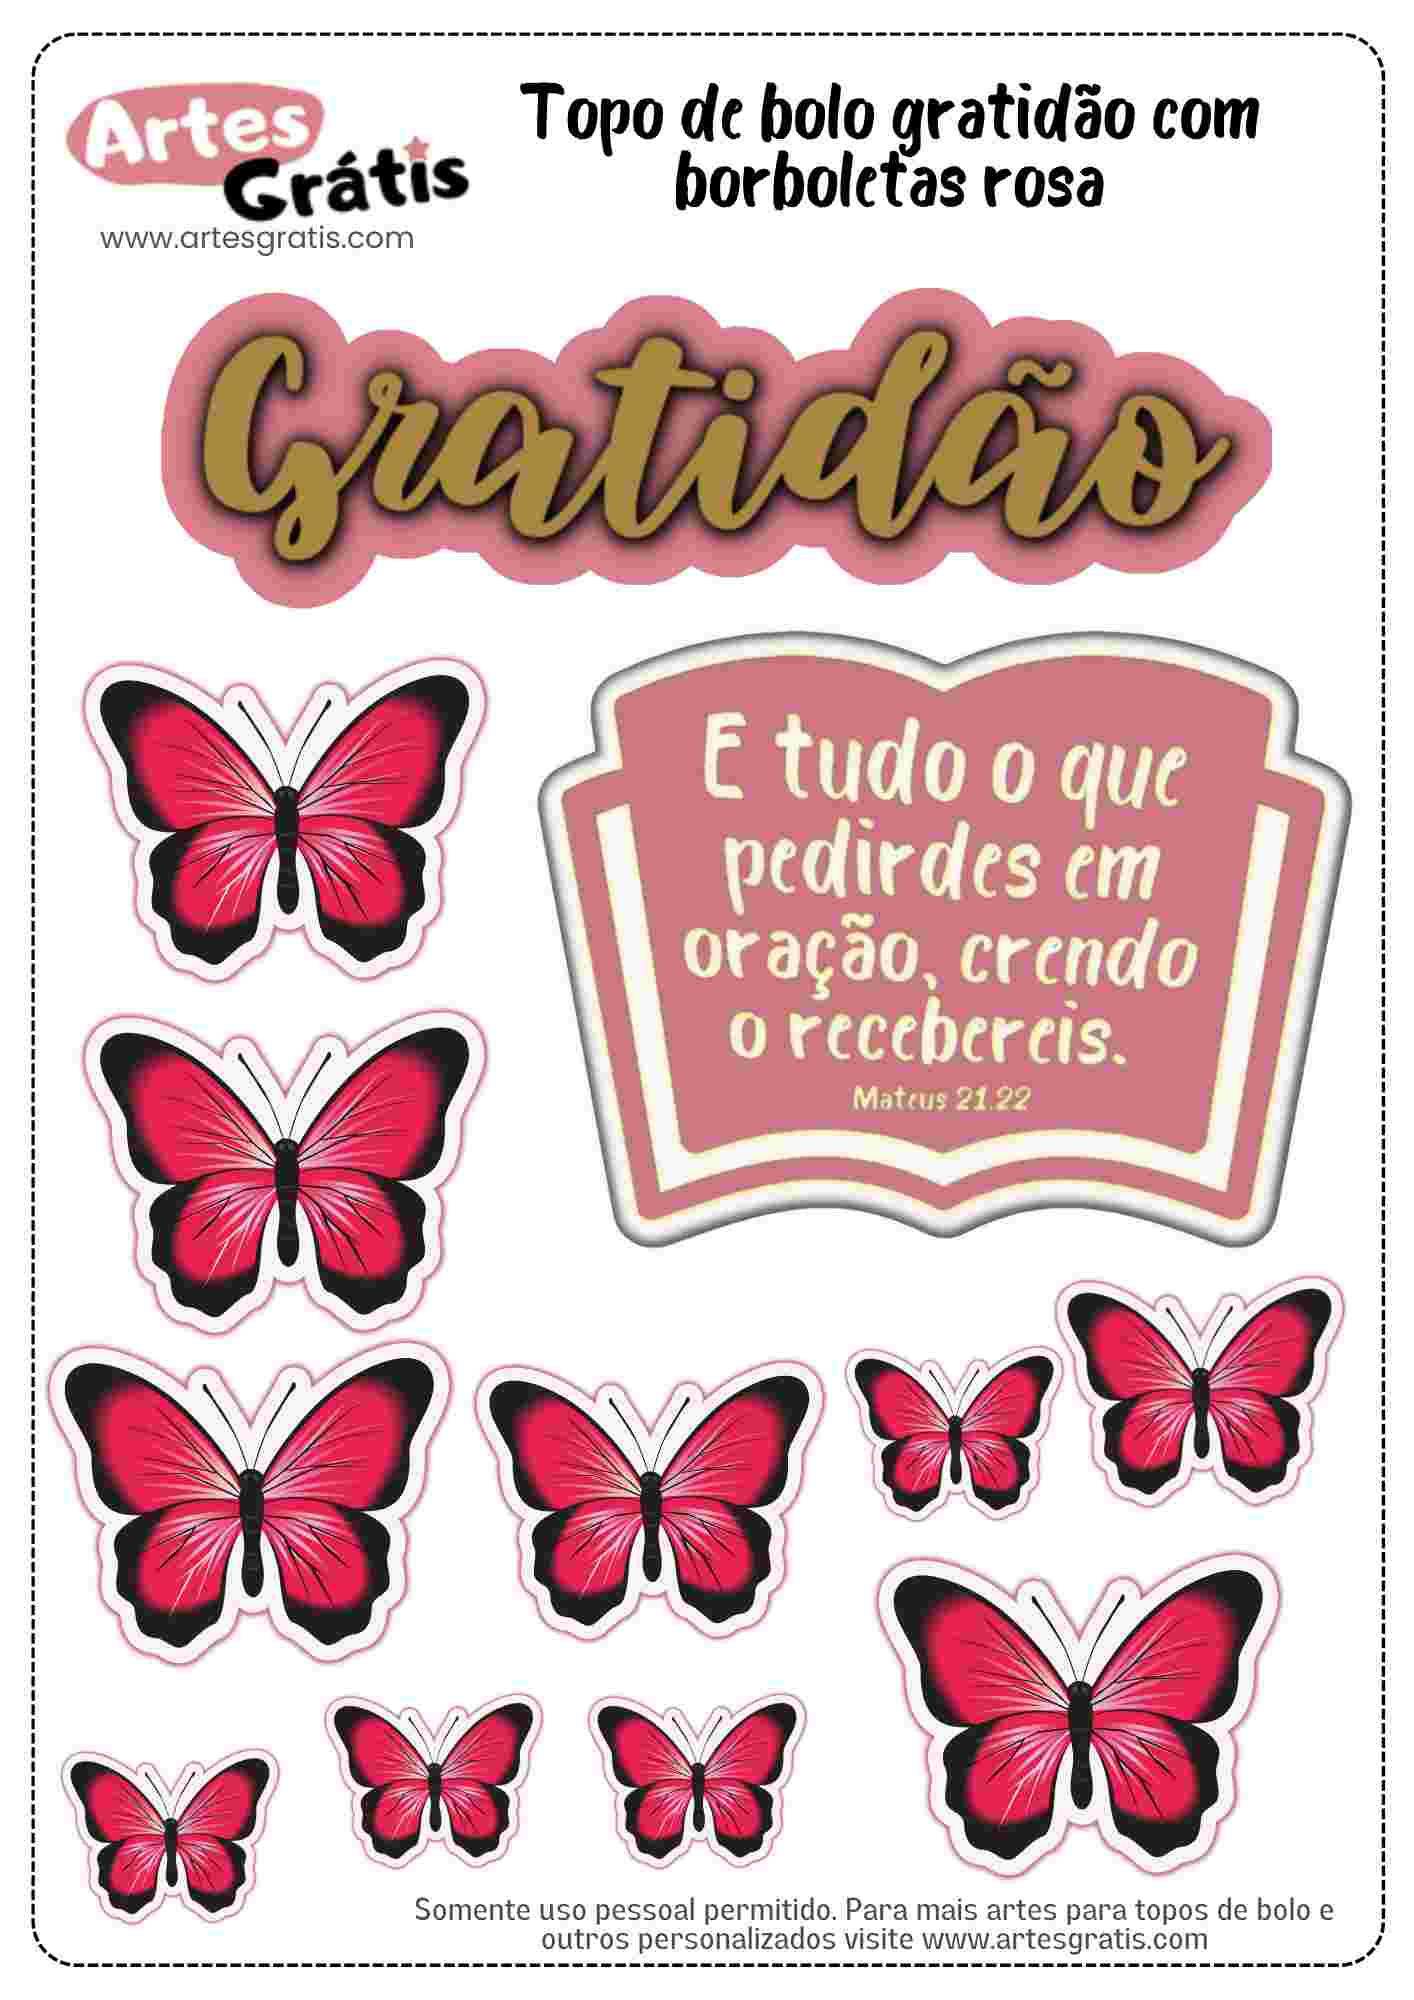 Topo de bolo gratidão borboletas rosa grátis para imprimir